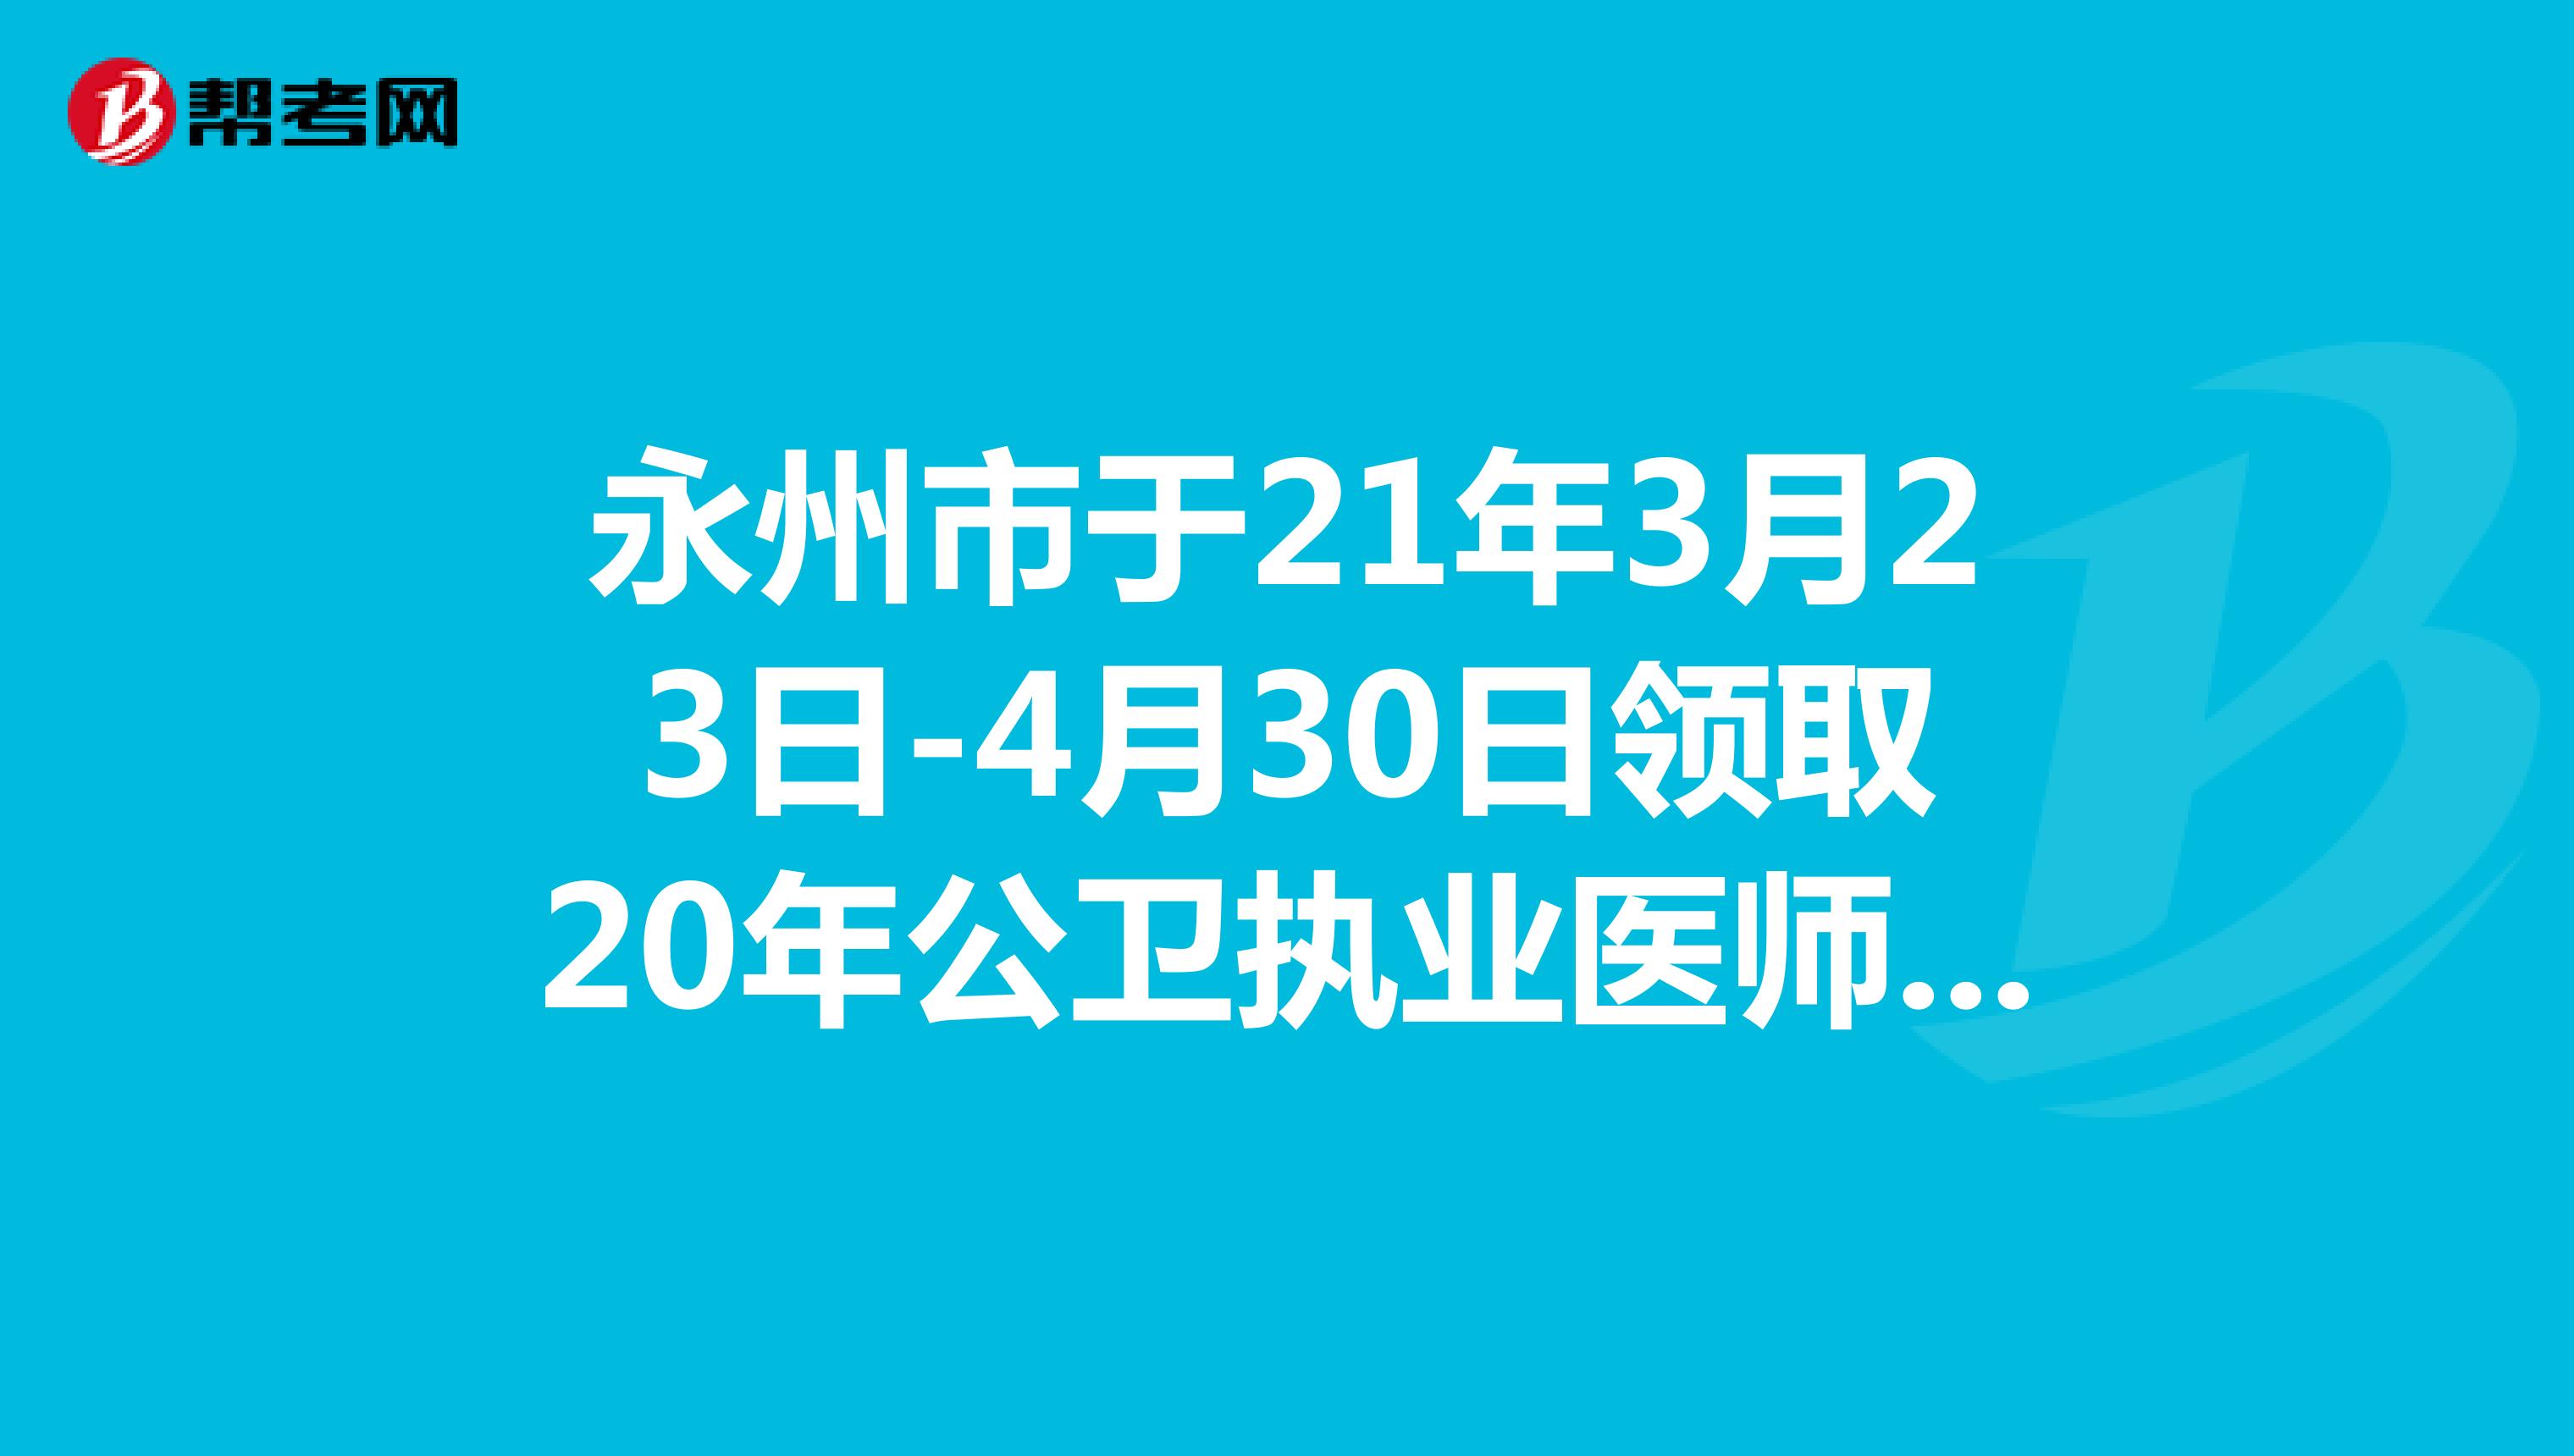 永州市于21年3月23日-4月30日领取20年公卫执业医师合格证书